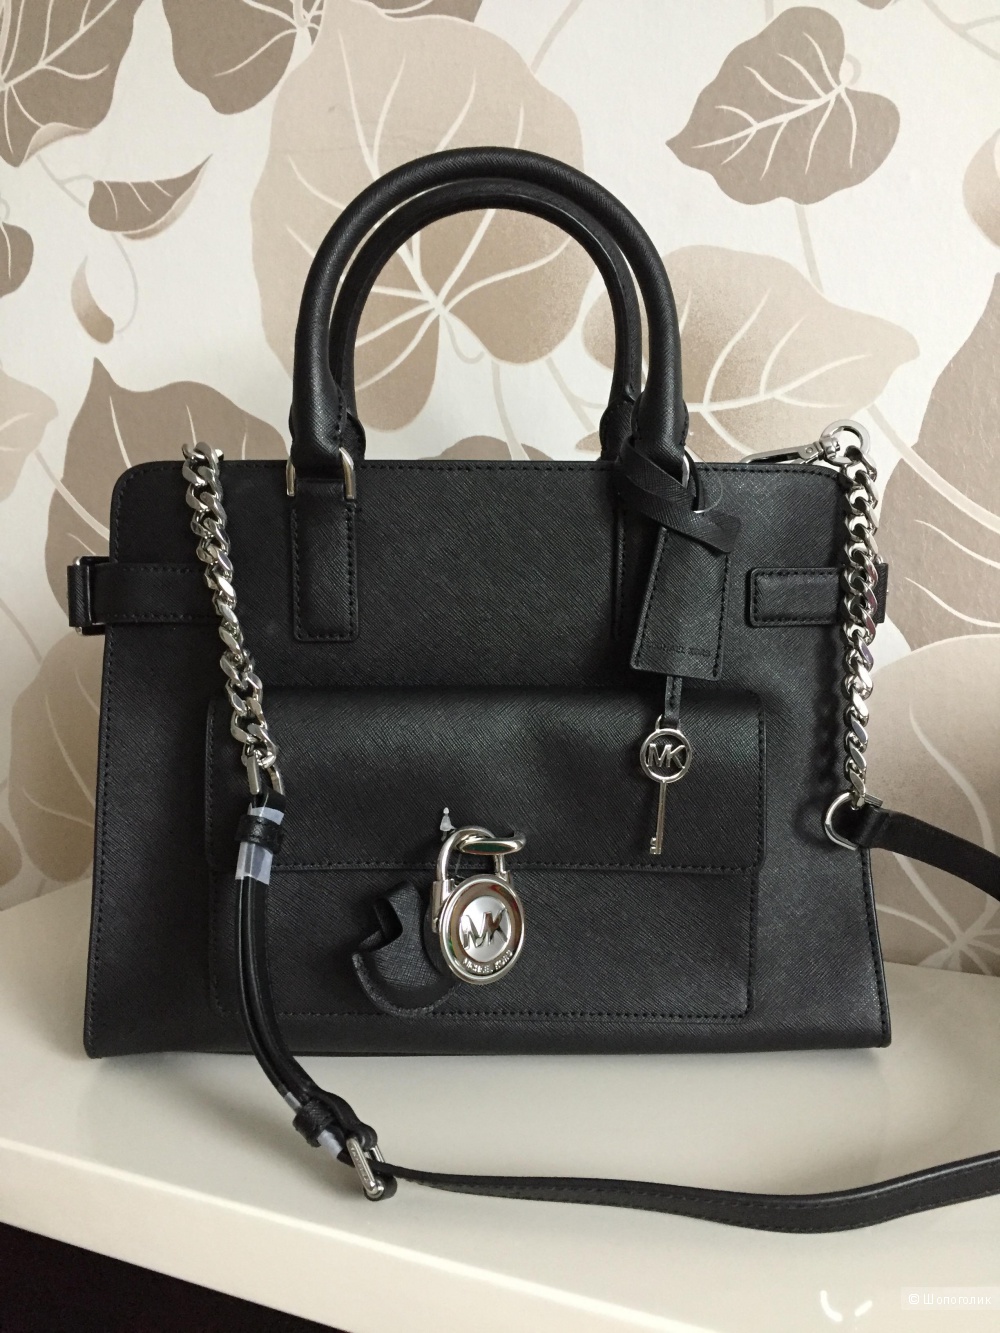 Новая сумка Michael Kors Emma Medium Saffiano leather